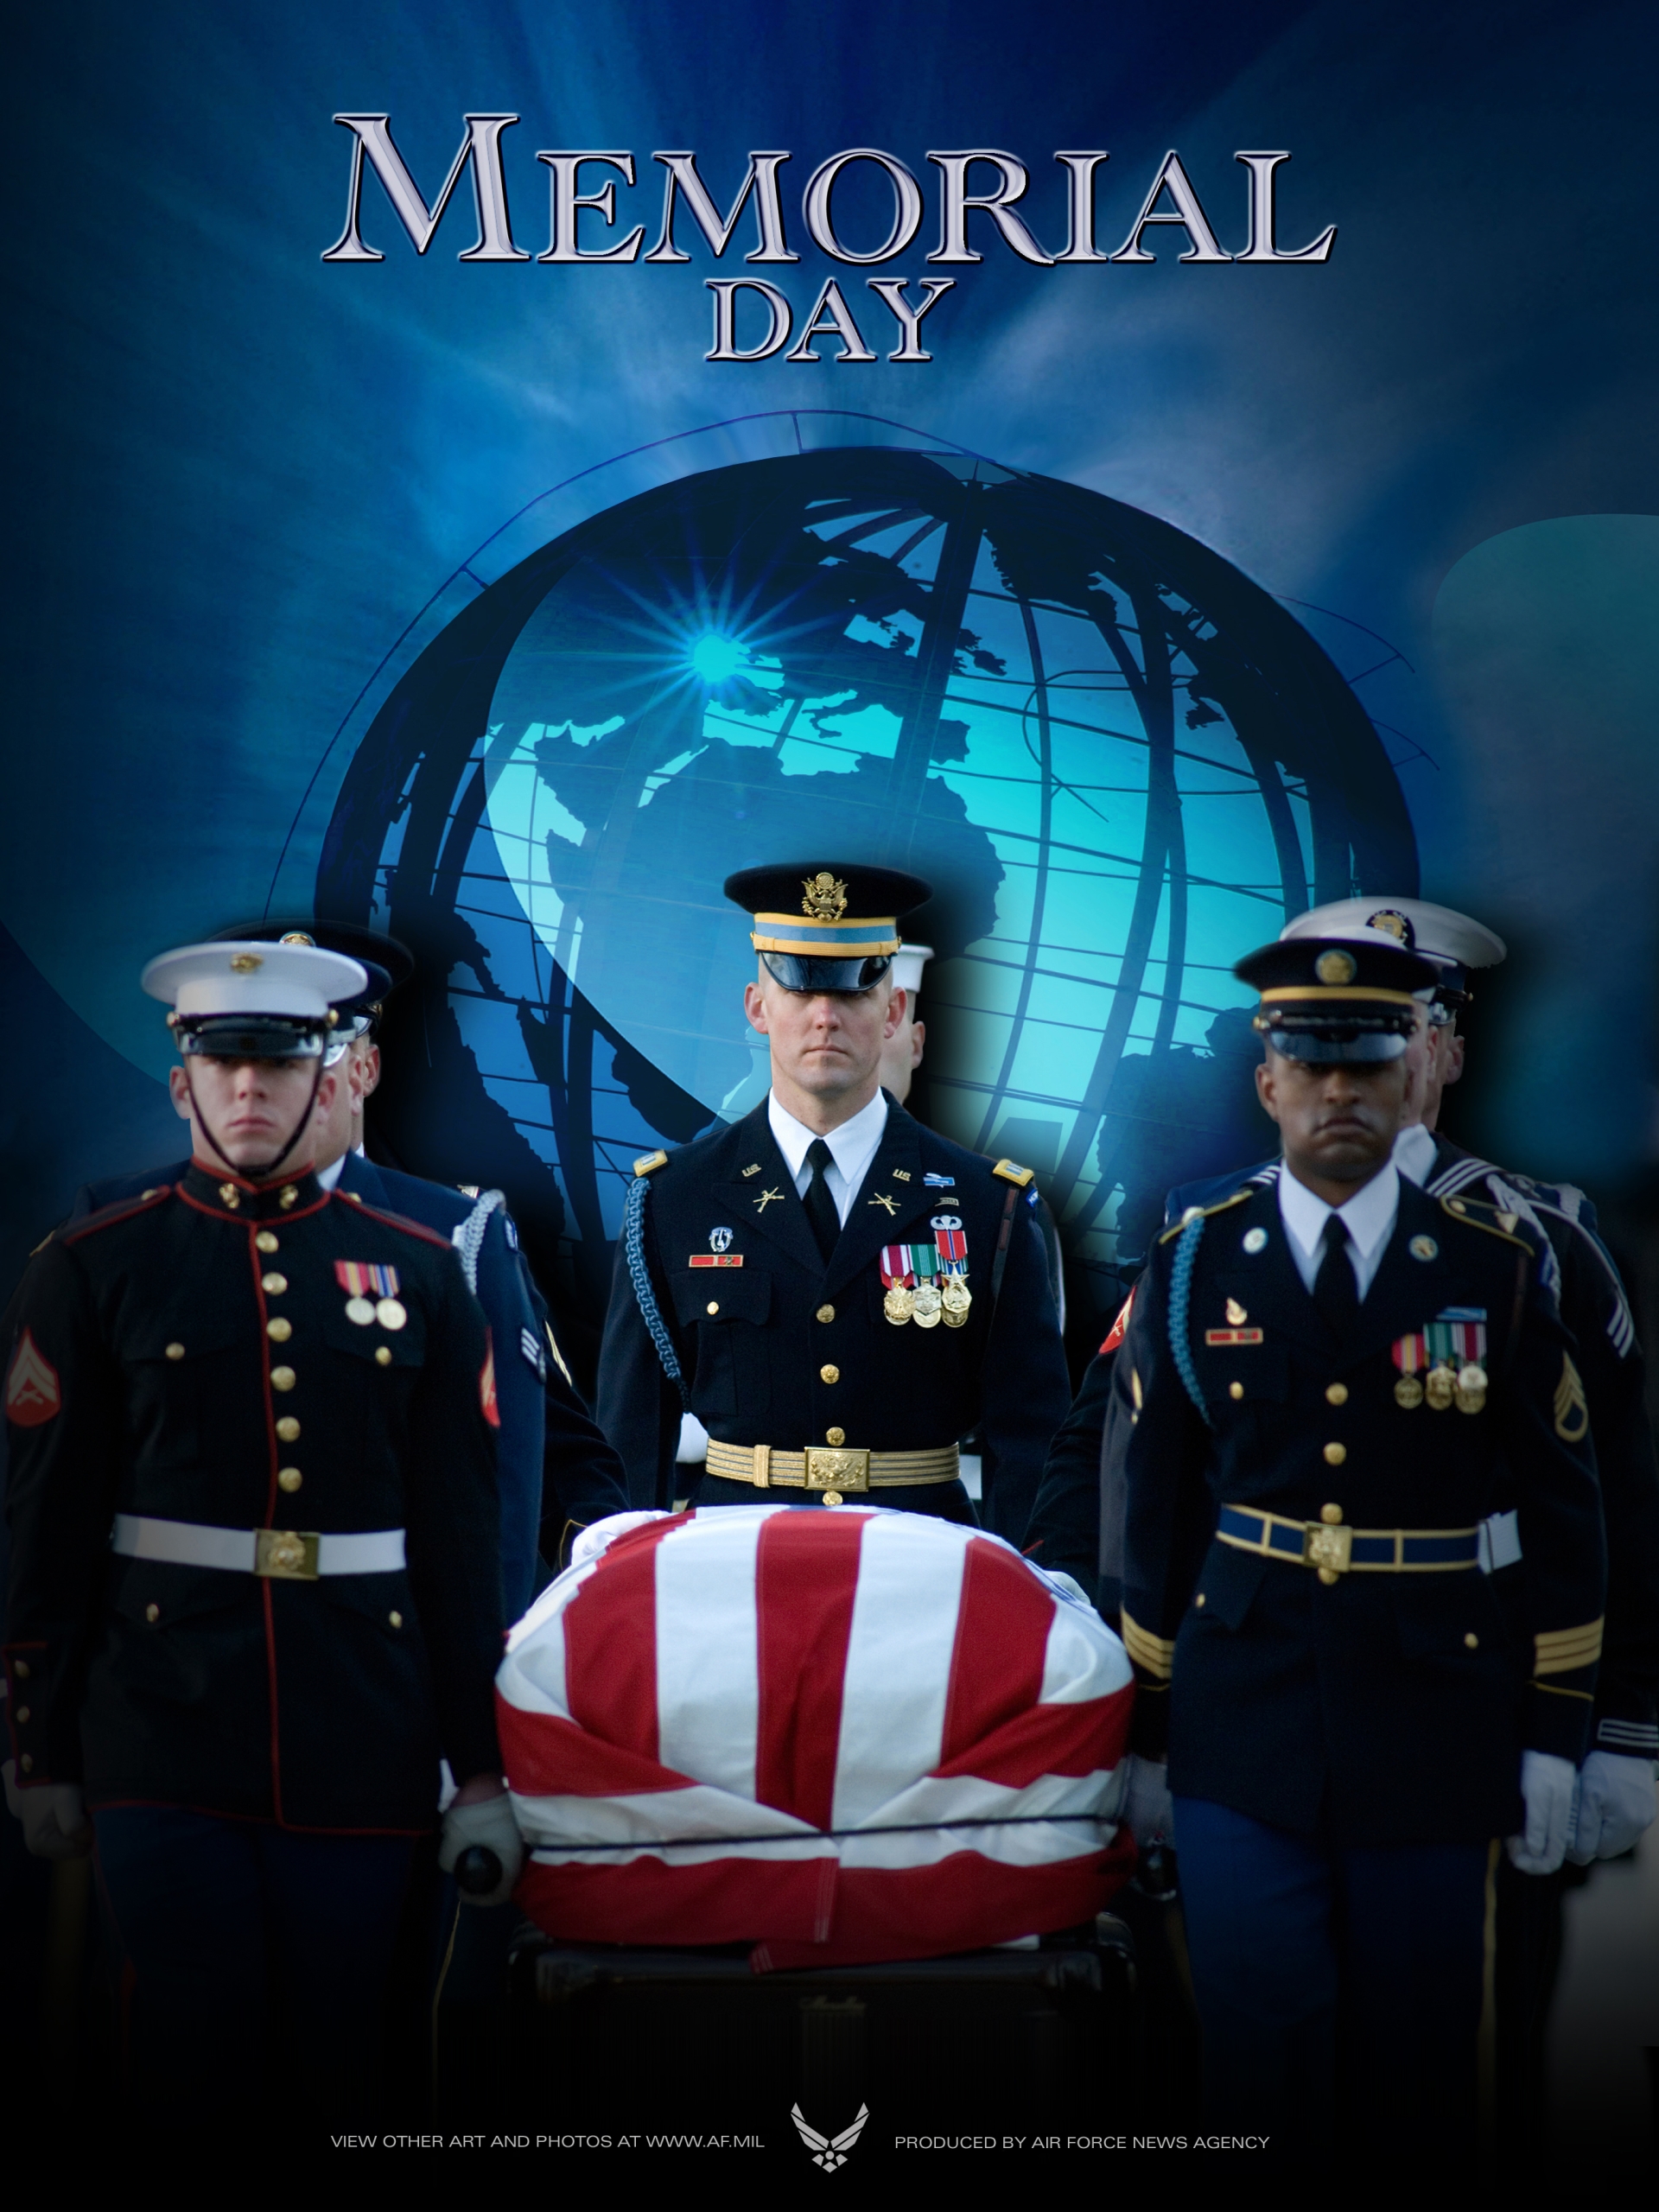 2008 Memorial Day Poster #3.